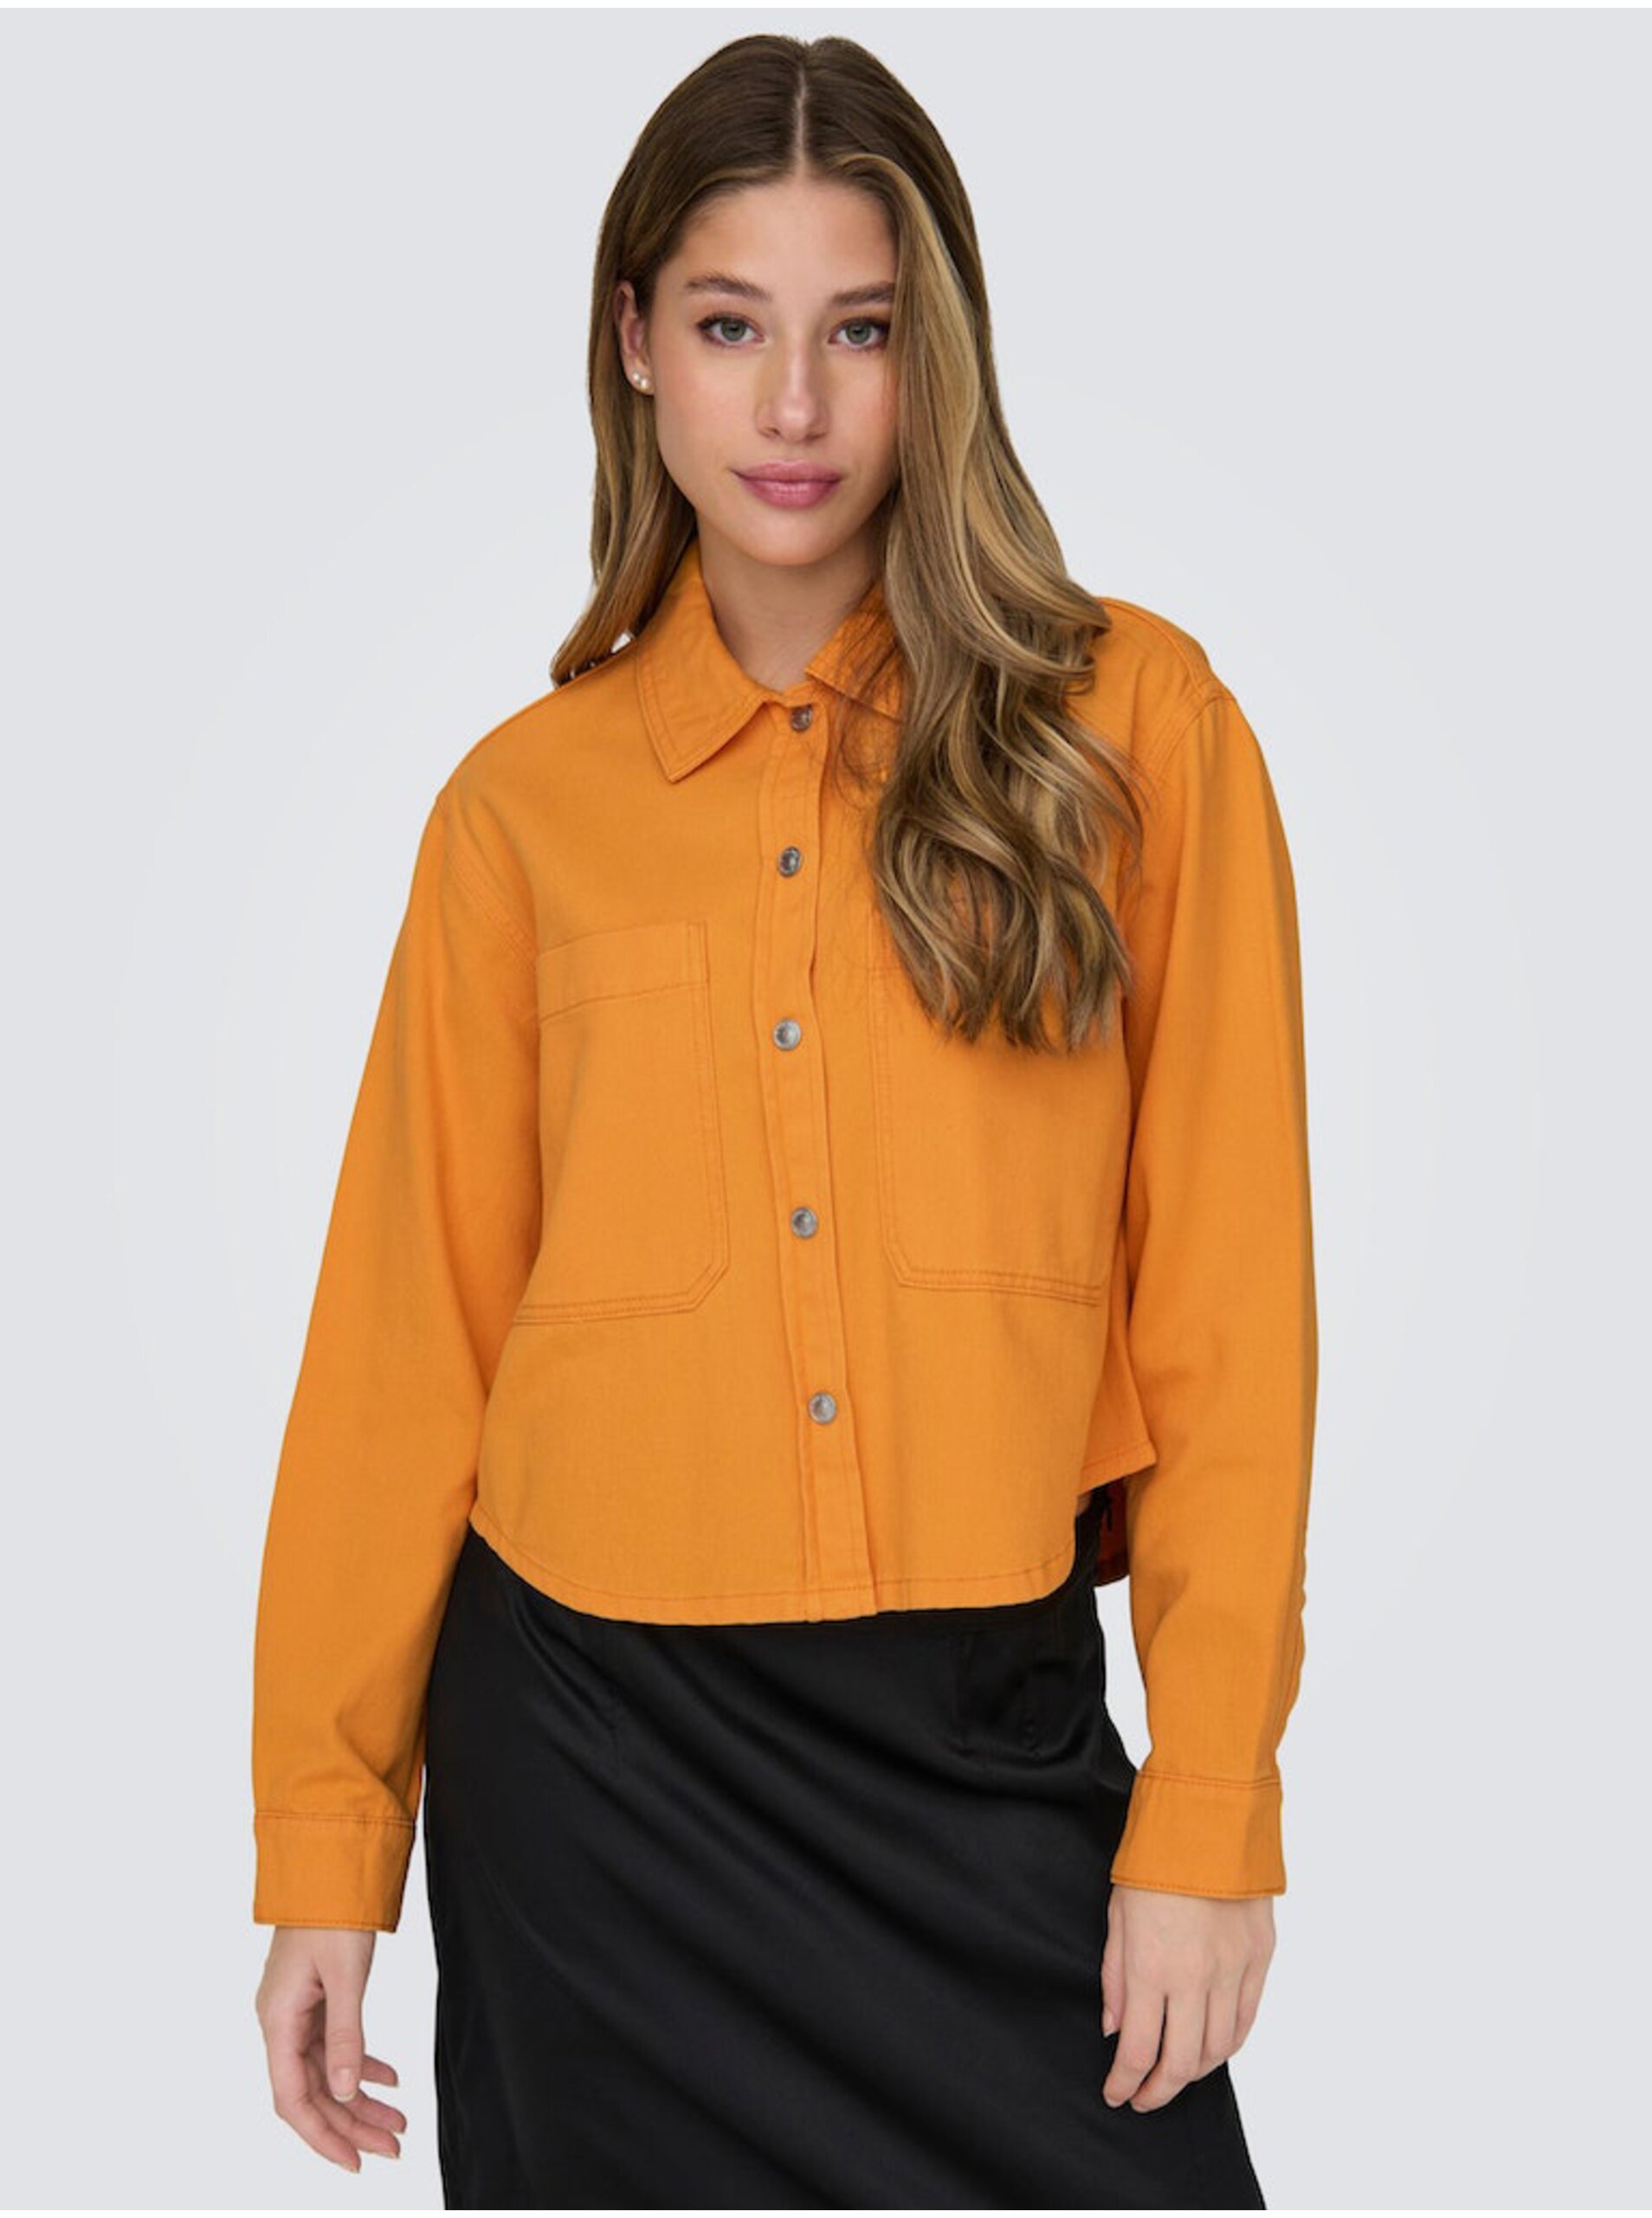 Lacno Oranžová dámska džínsová bunda ONLY Drew